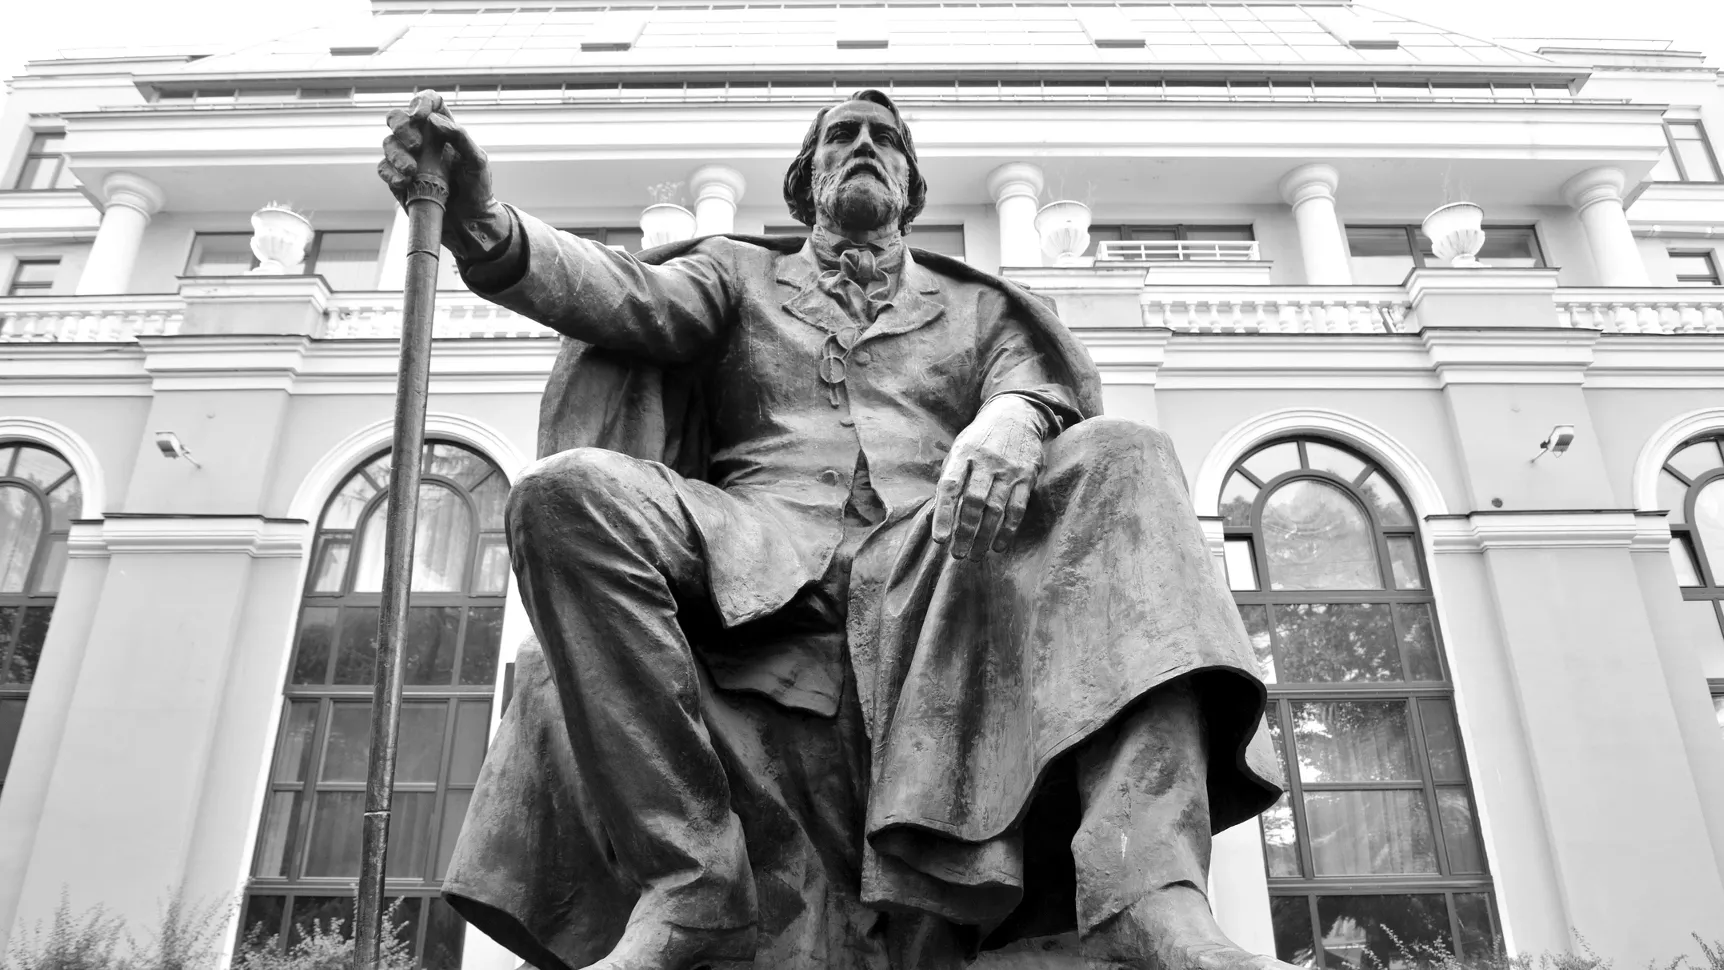 Памятник И. С. Тургеневу в Санкт-Петербурге. Фото: konstantinks / Shutterstock / Fotodom